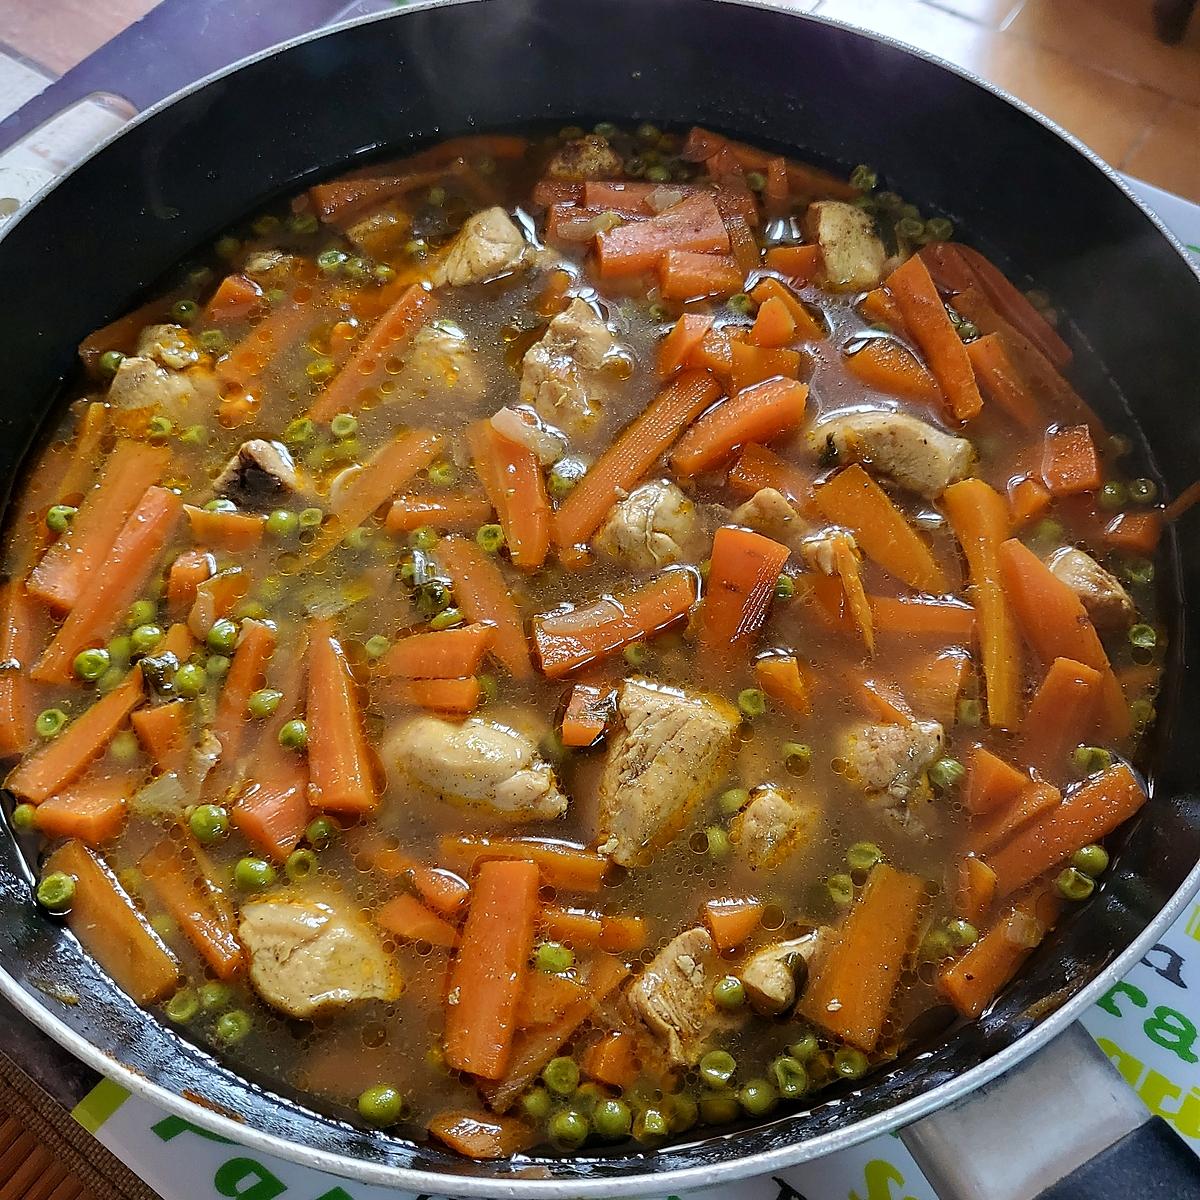 recette Poulet aux petits pois et aux carottes façon tajine